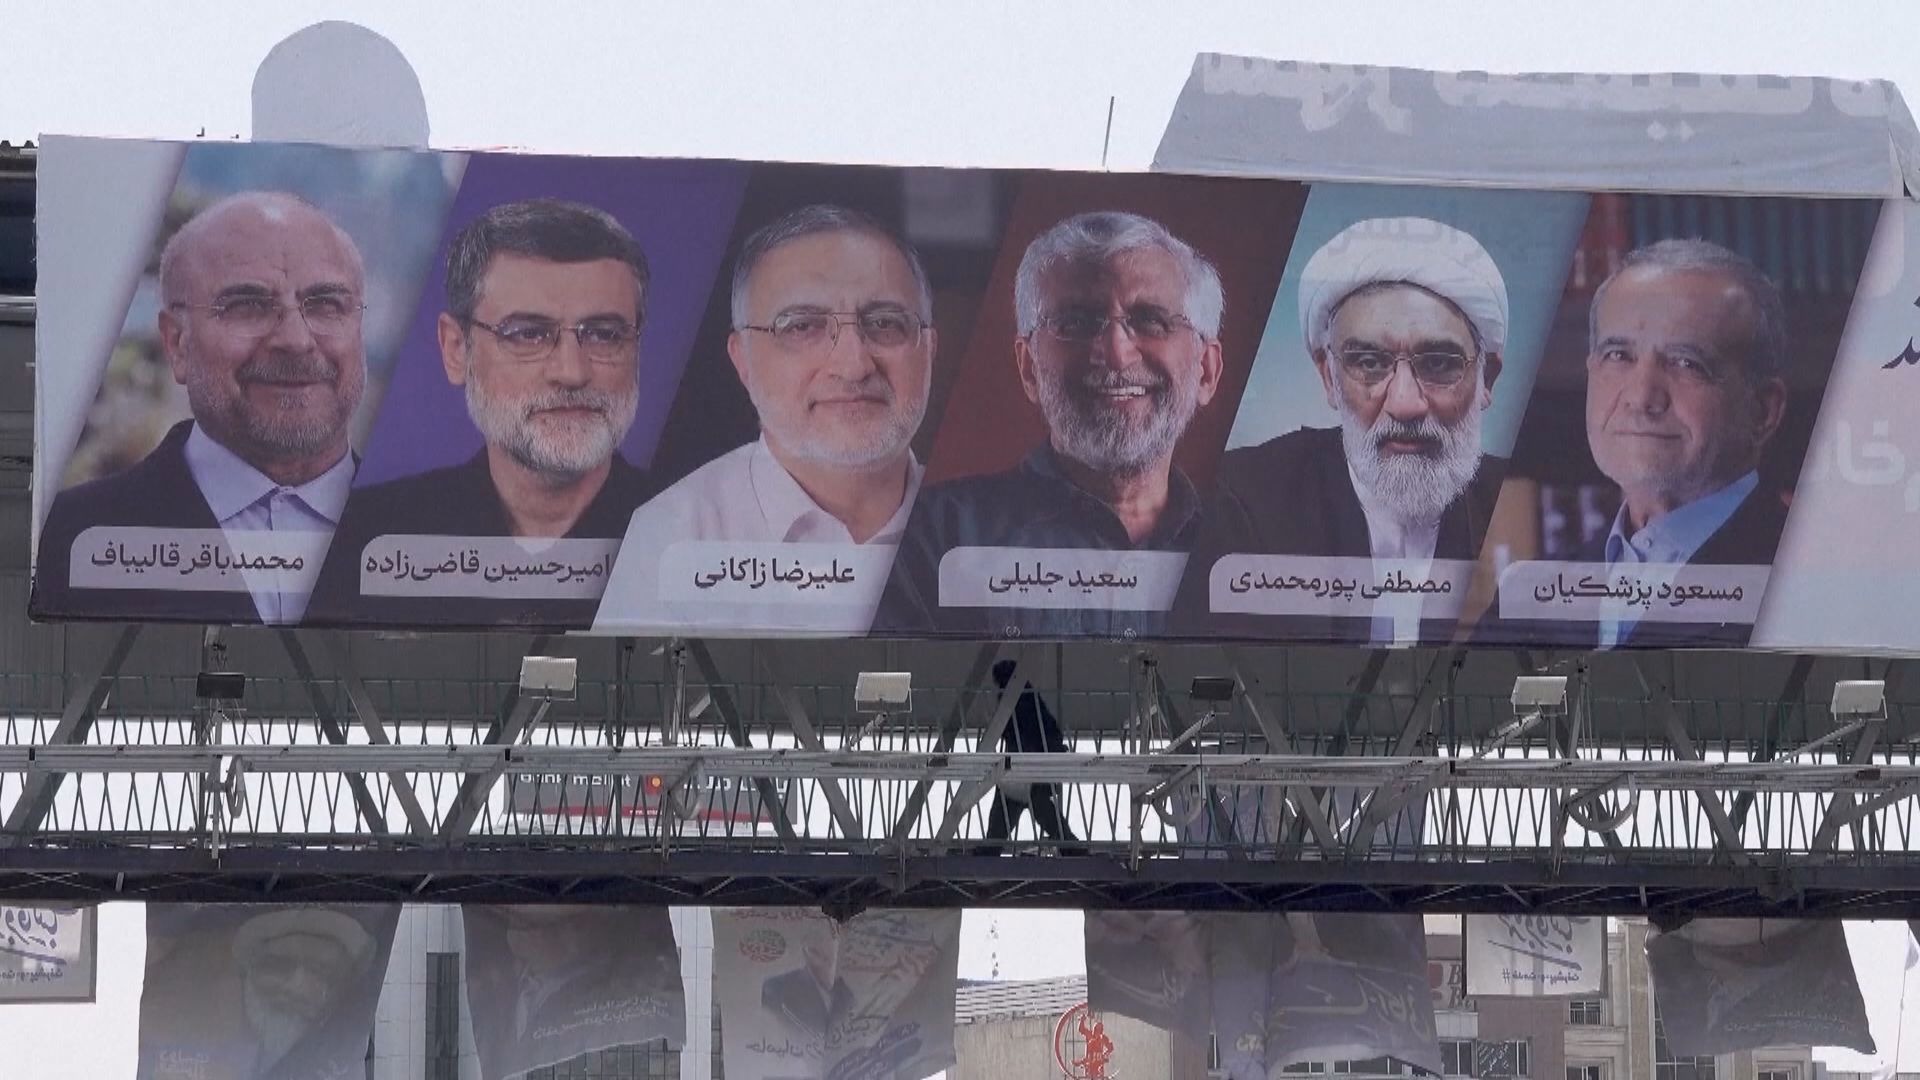 伊朗總統選舉今舉行 兩名保守派候選人退選